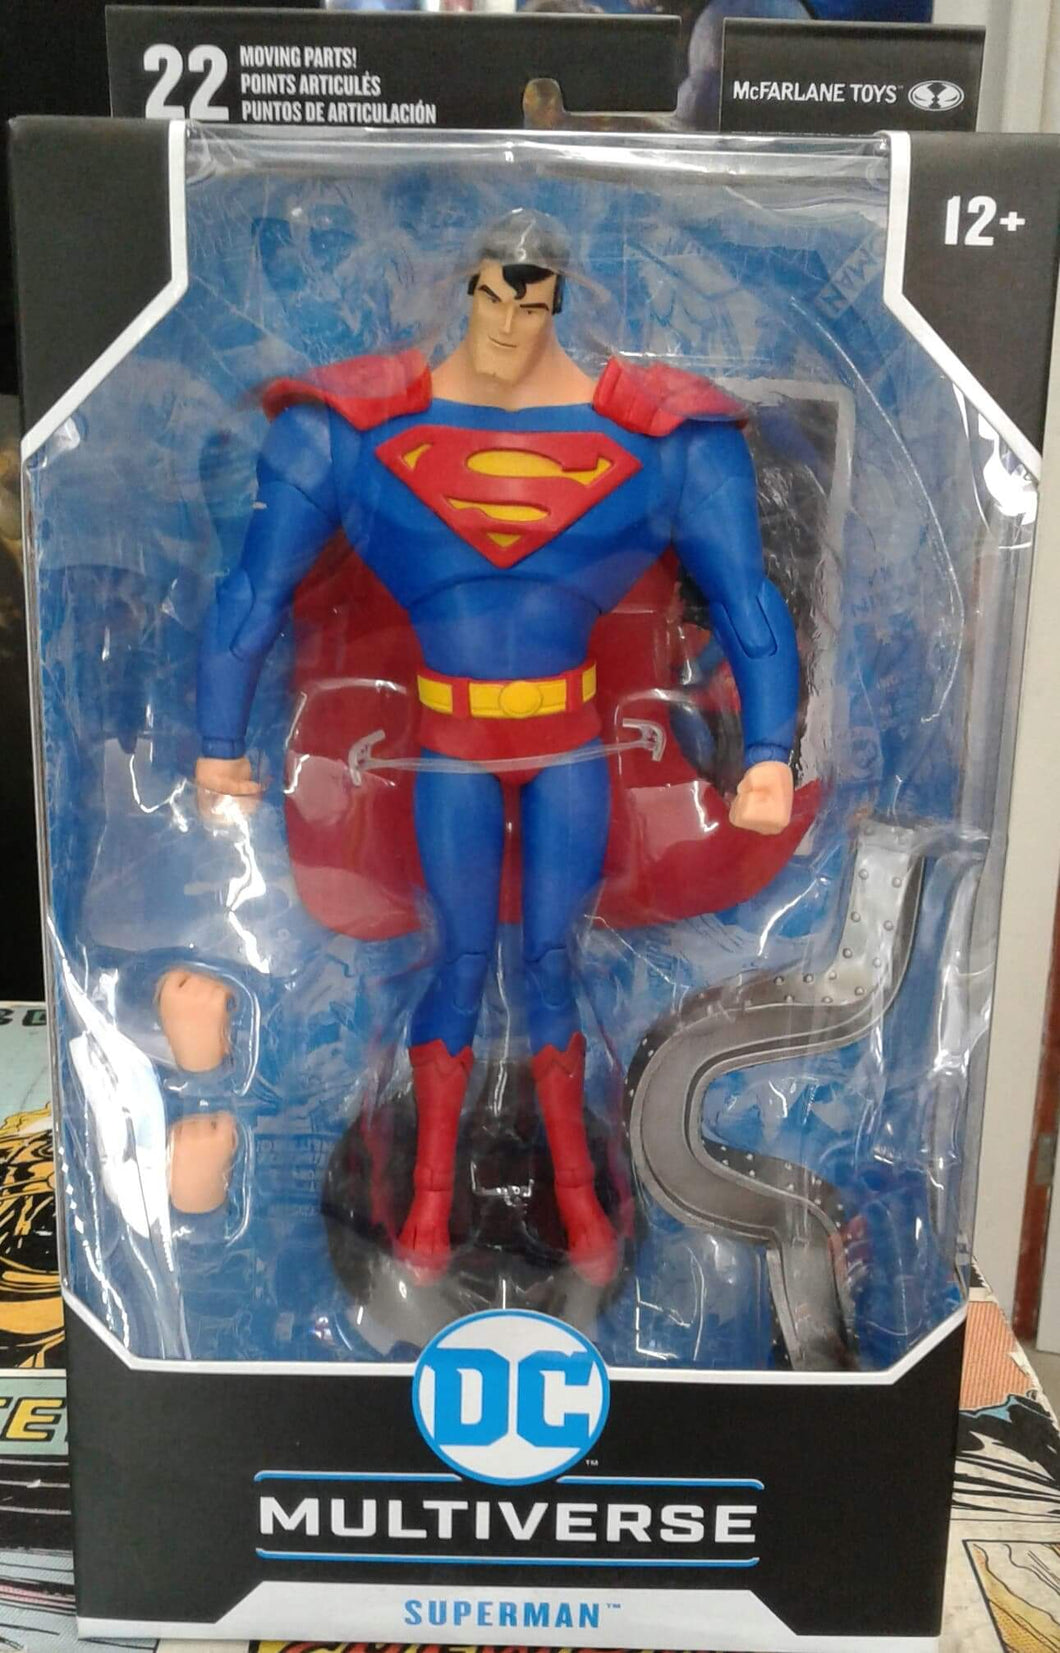 DC MULTIVERSE SUPERMAN figure